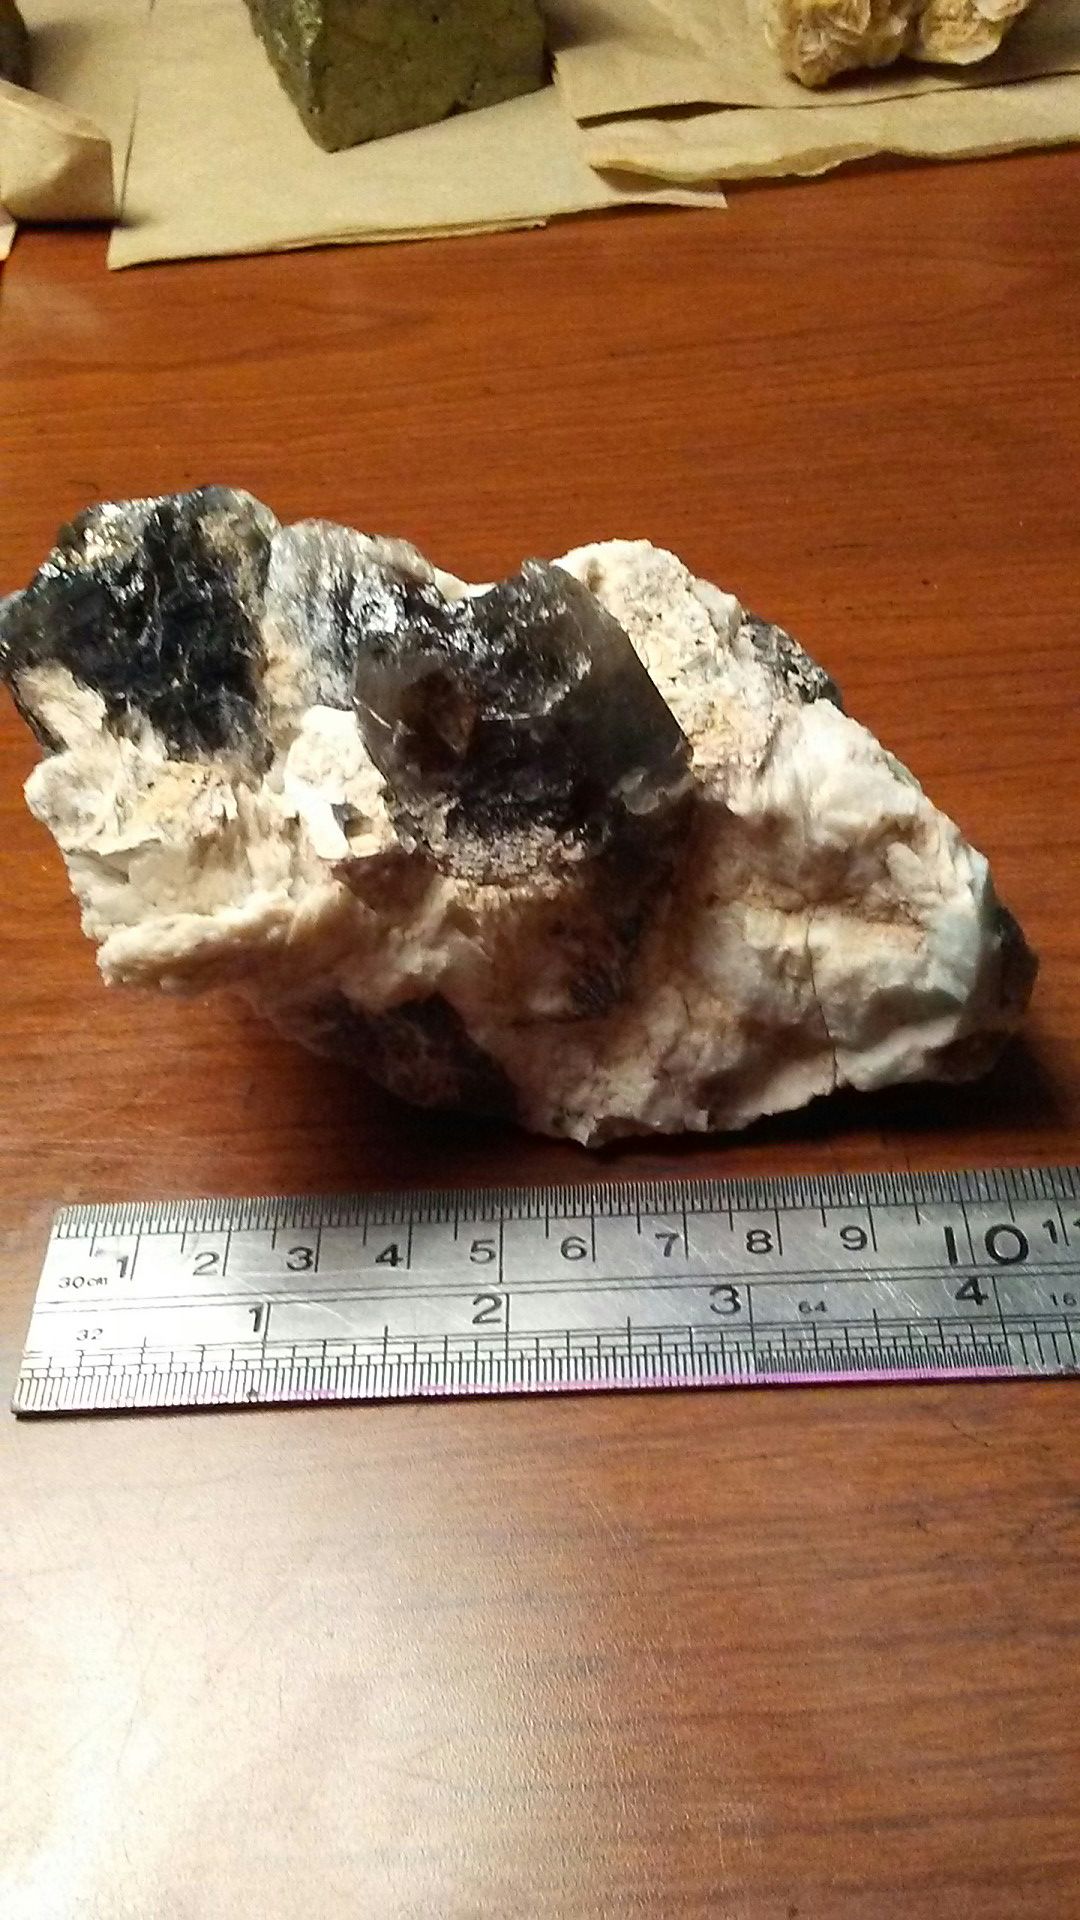 Smoky quartz in matrix with Amazonite